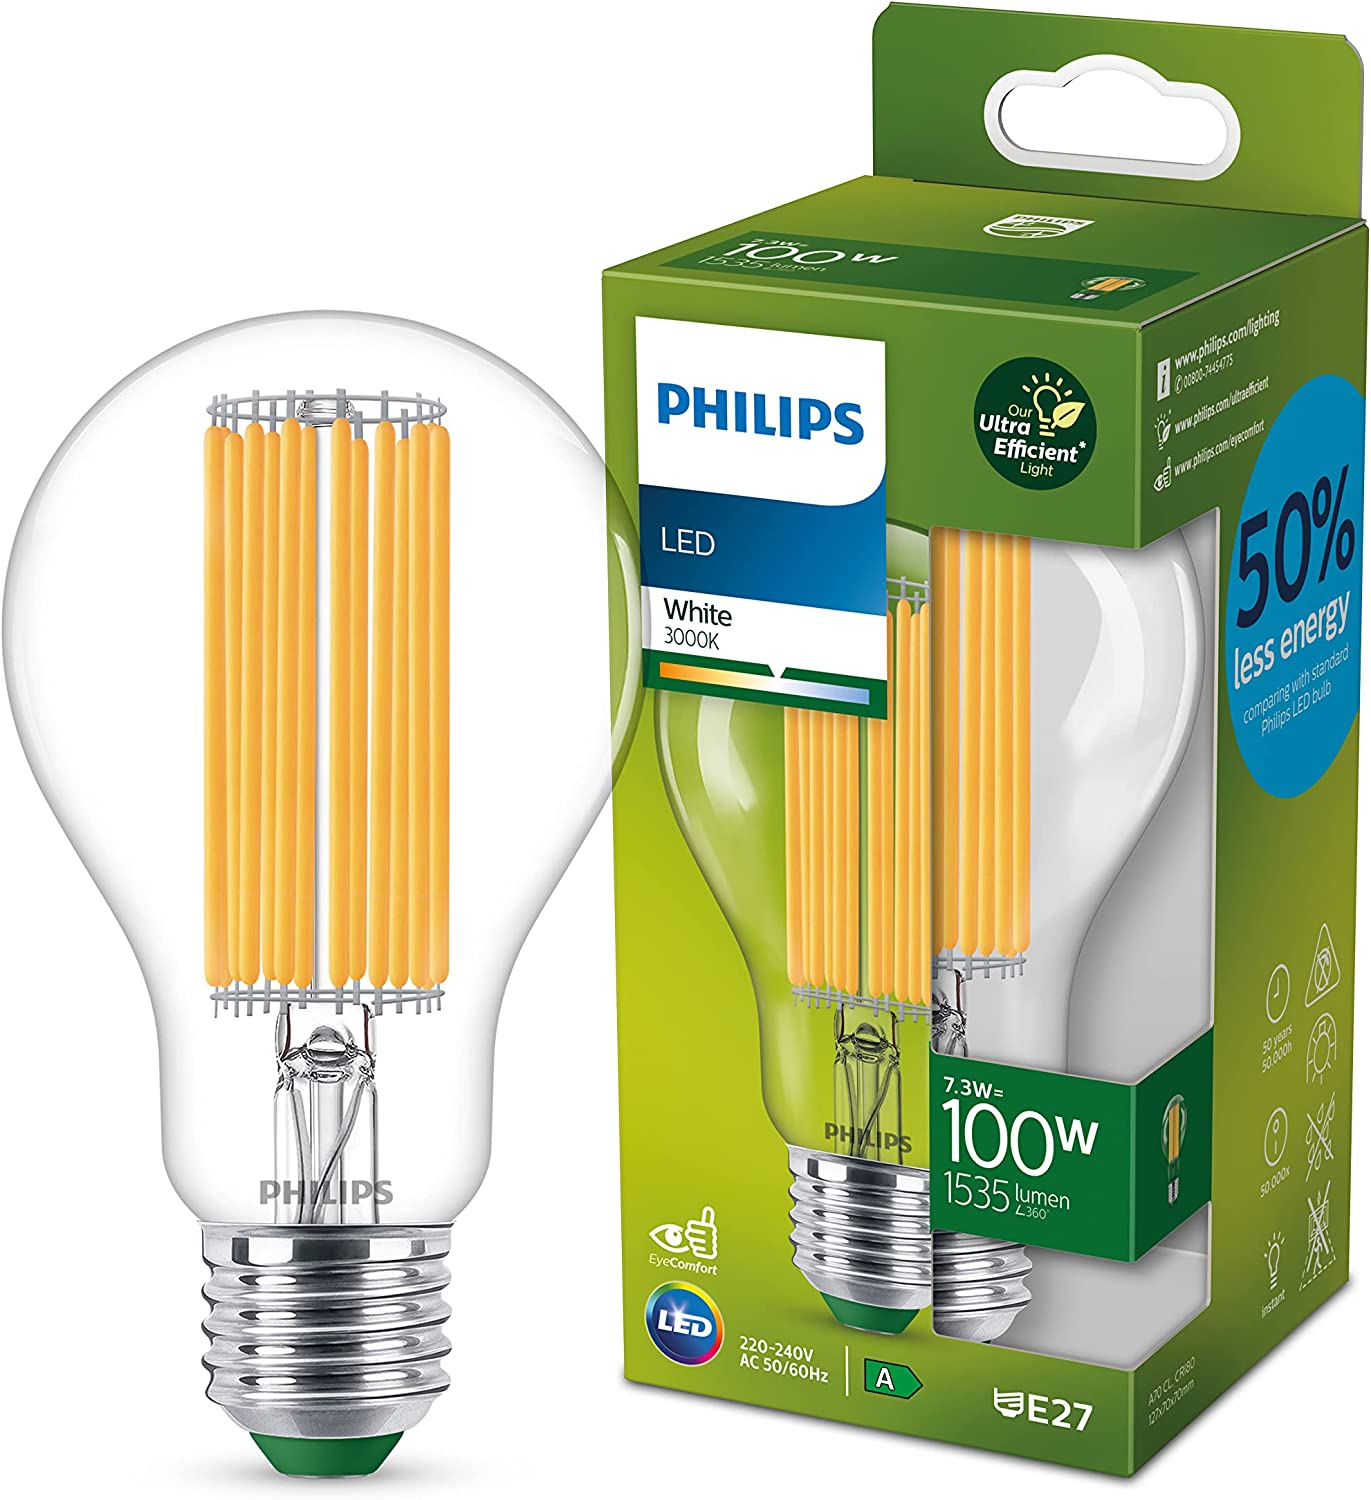 Signify svela Philips Ultra Efficiente, le lampadine a LED buone per il pianeta e il portafoglio